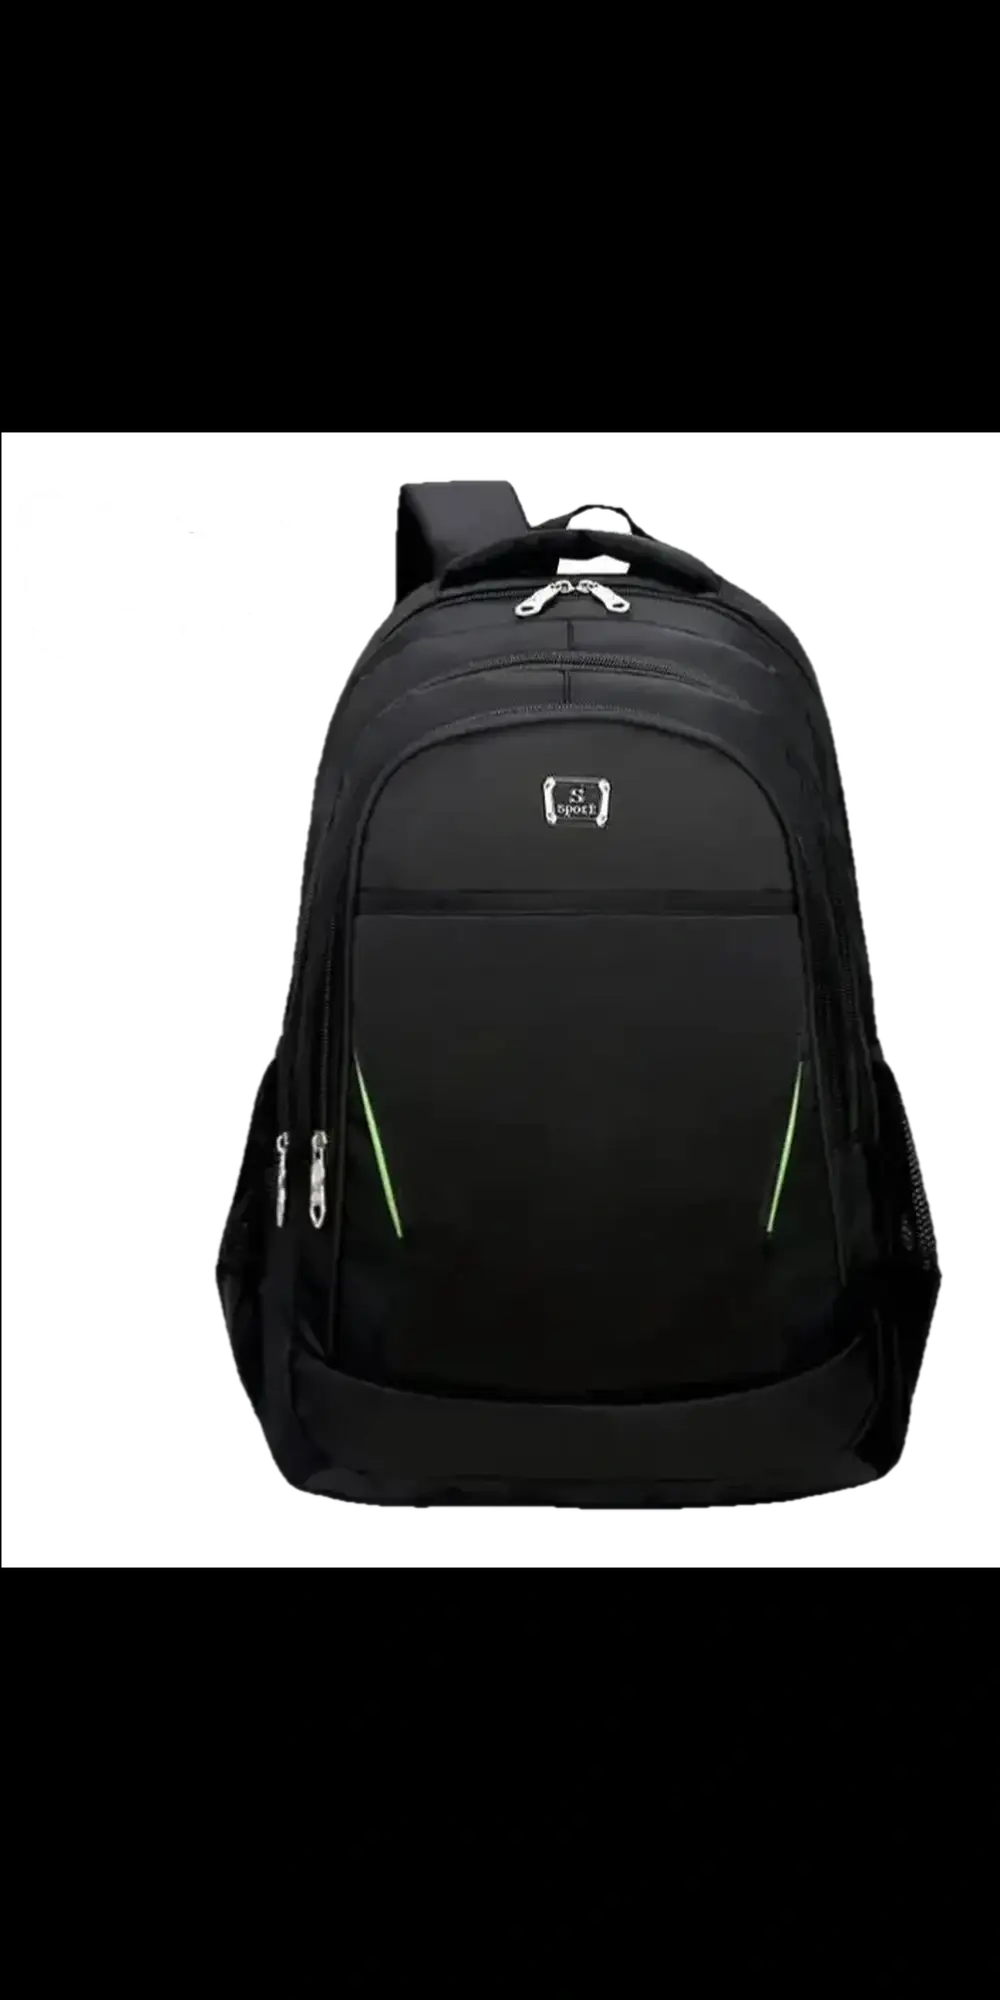 Backpack Men’s Leisure Backpack Backpack Student Schoolbag -